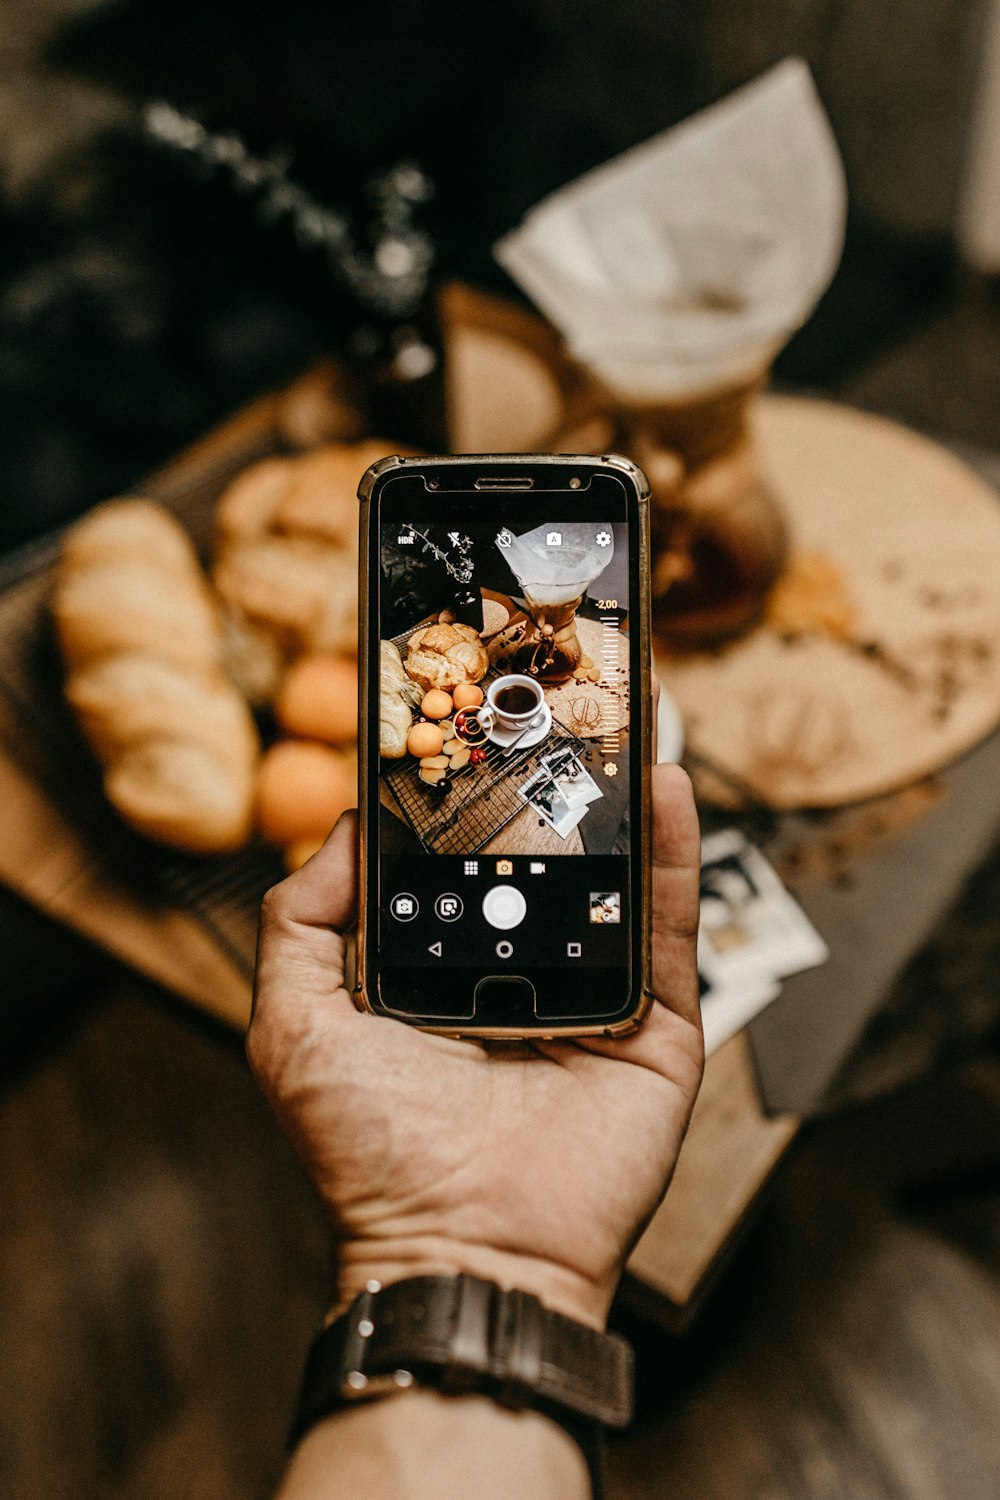 スマートフォンでパンやコーヒーを撮影する人